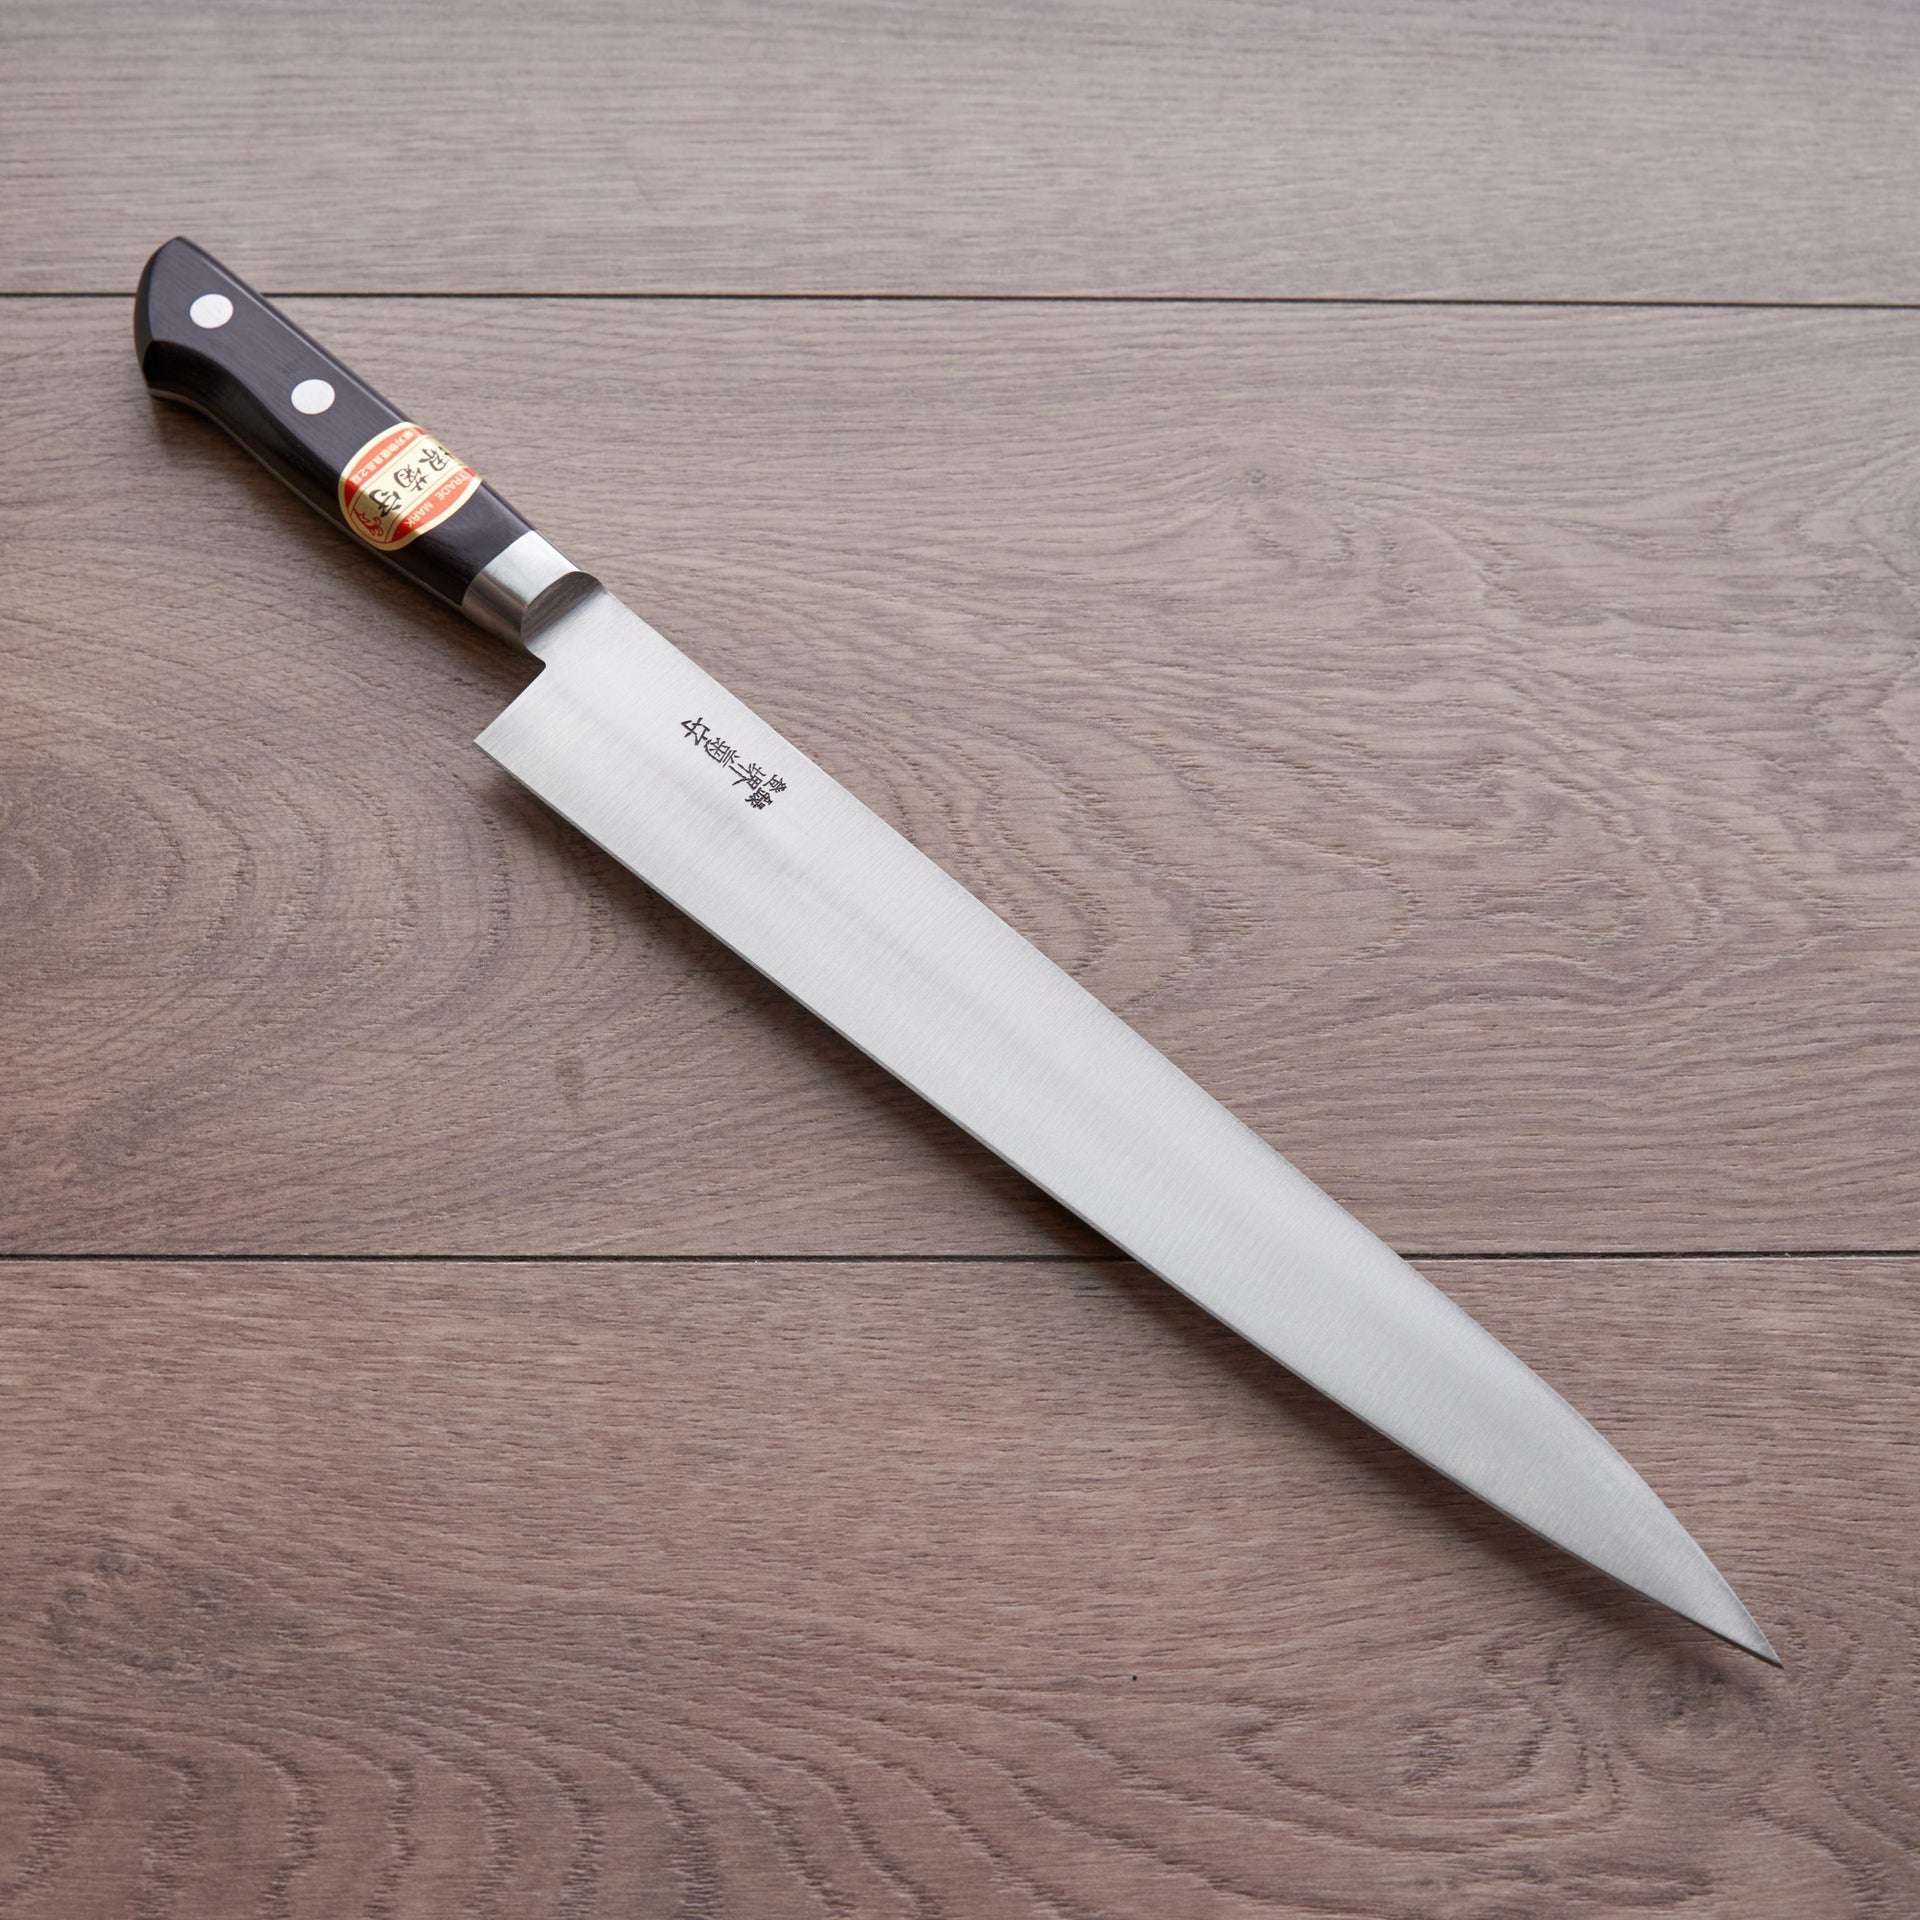 Sakai Kikumori Nihonko Carbon Sujihiki 270mm-Knife-Sakai Kikumori-Carbon Knife Co